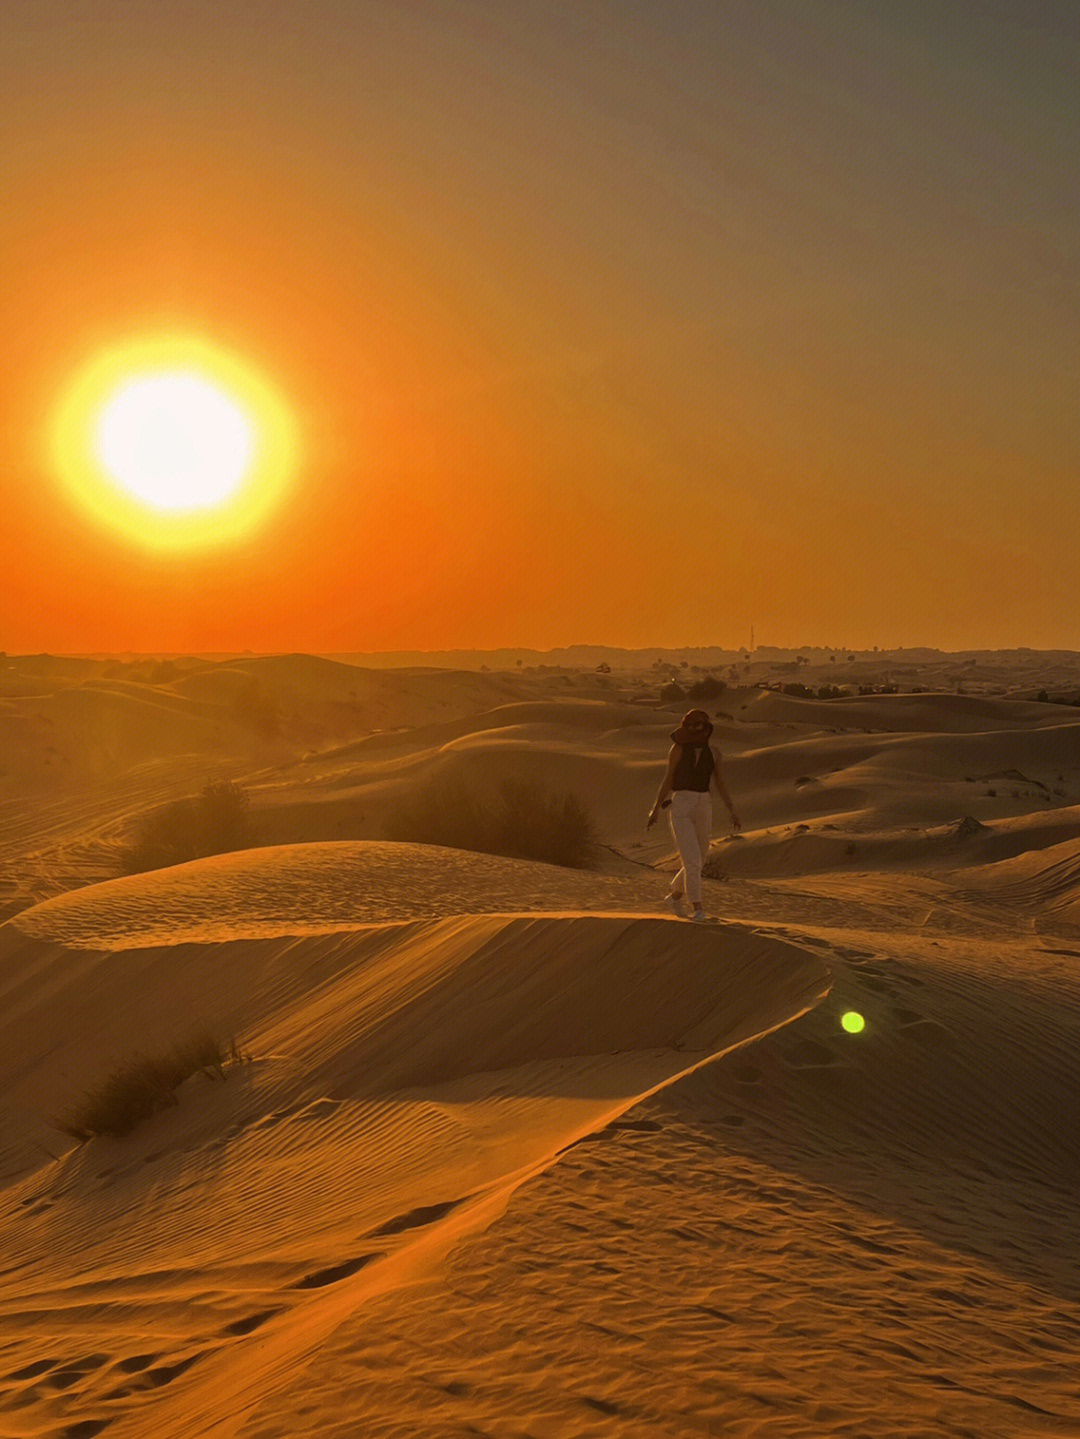 大漠落日圆寂图片